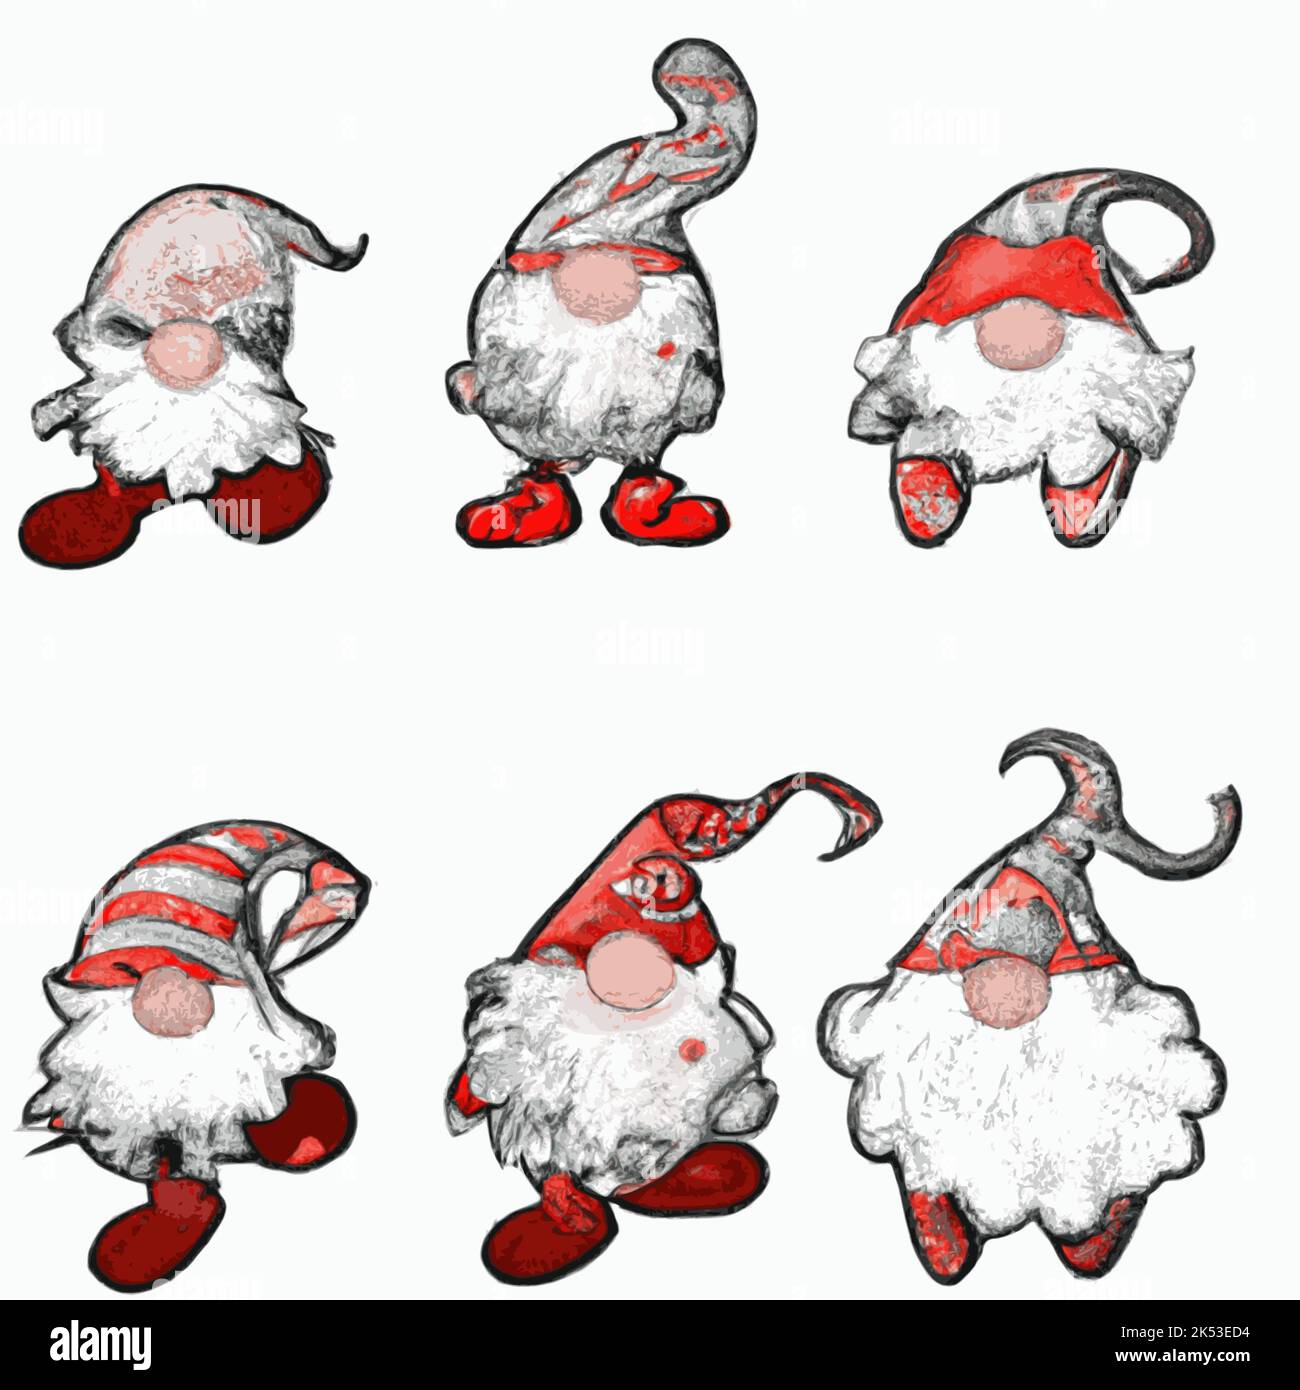 Lustige Zwerg-Weihnachtsmann-Figuren mit verschiedenen Hüten, isoliert auf einem leeren weißen Hintergrund Stock Vektor